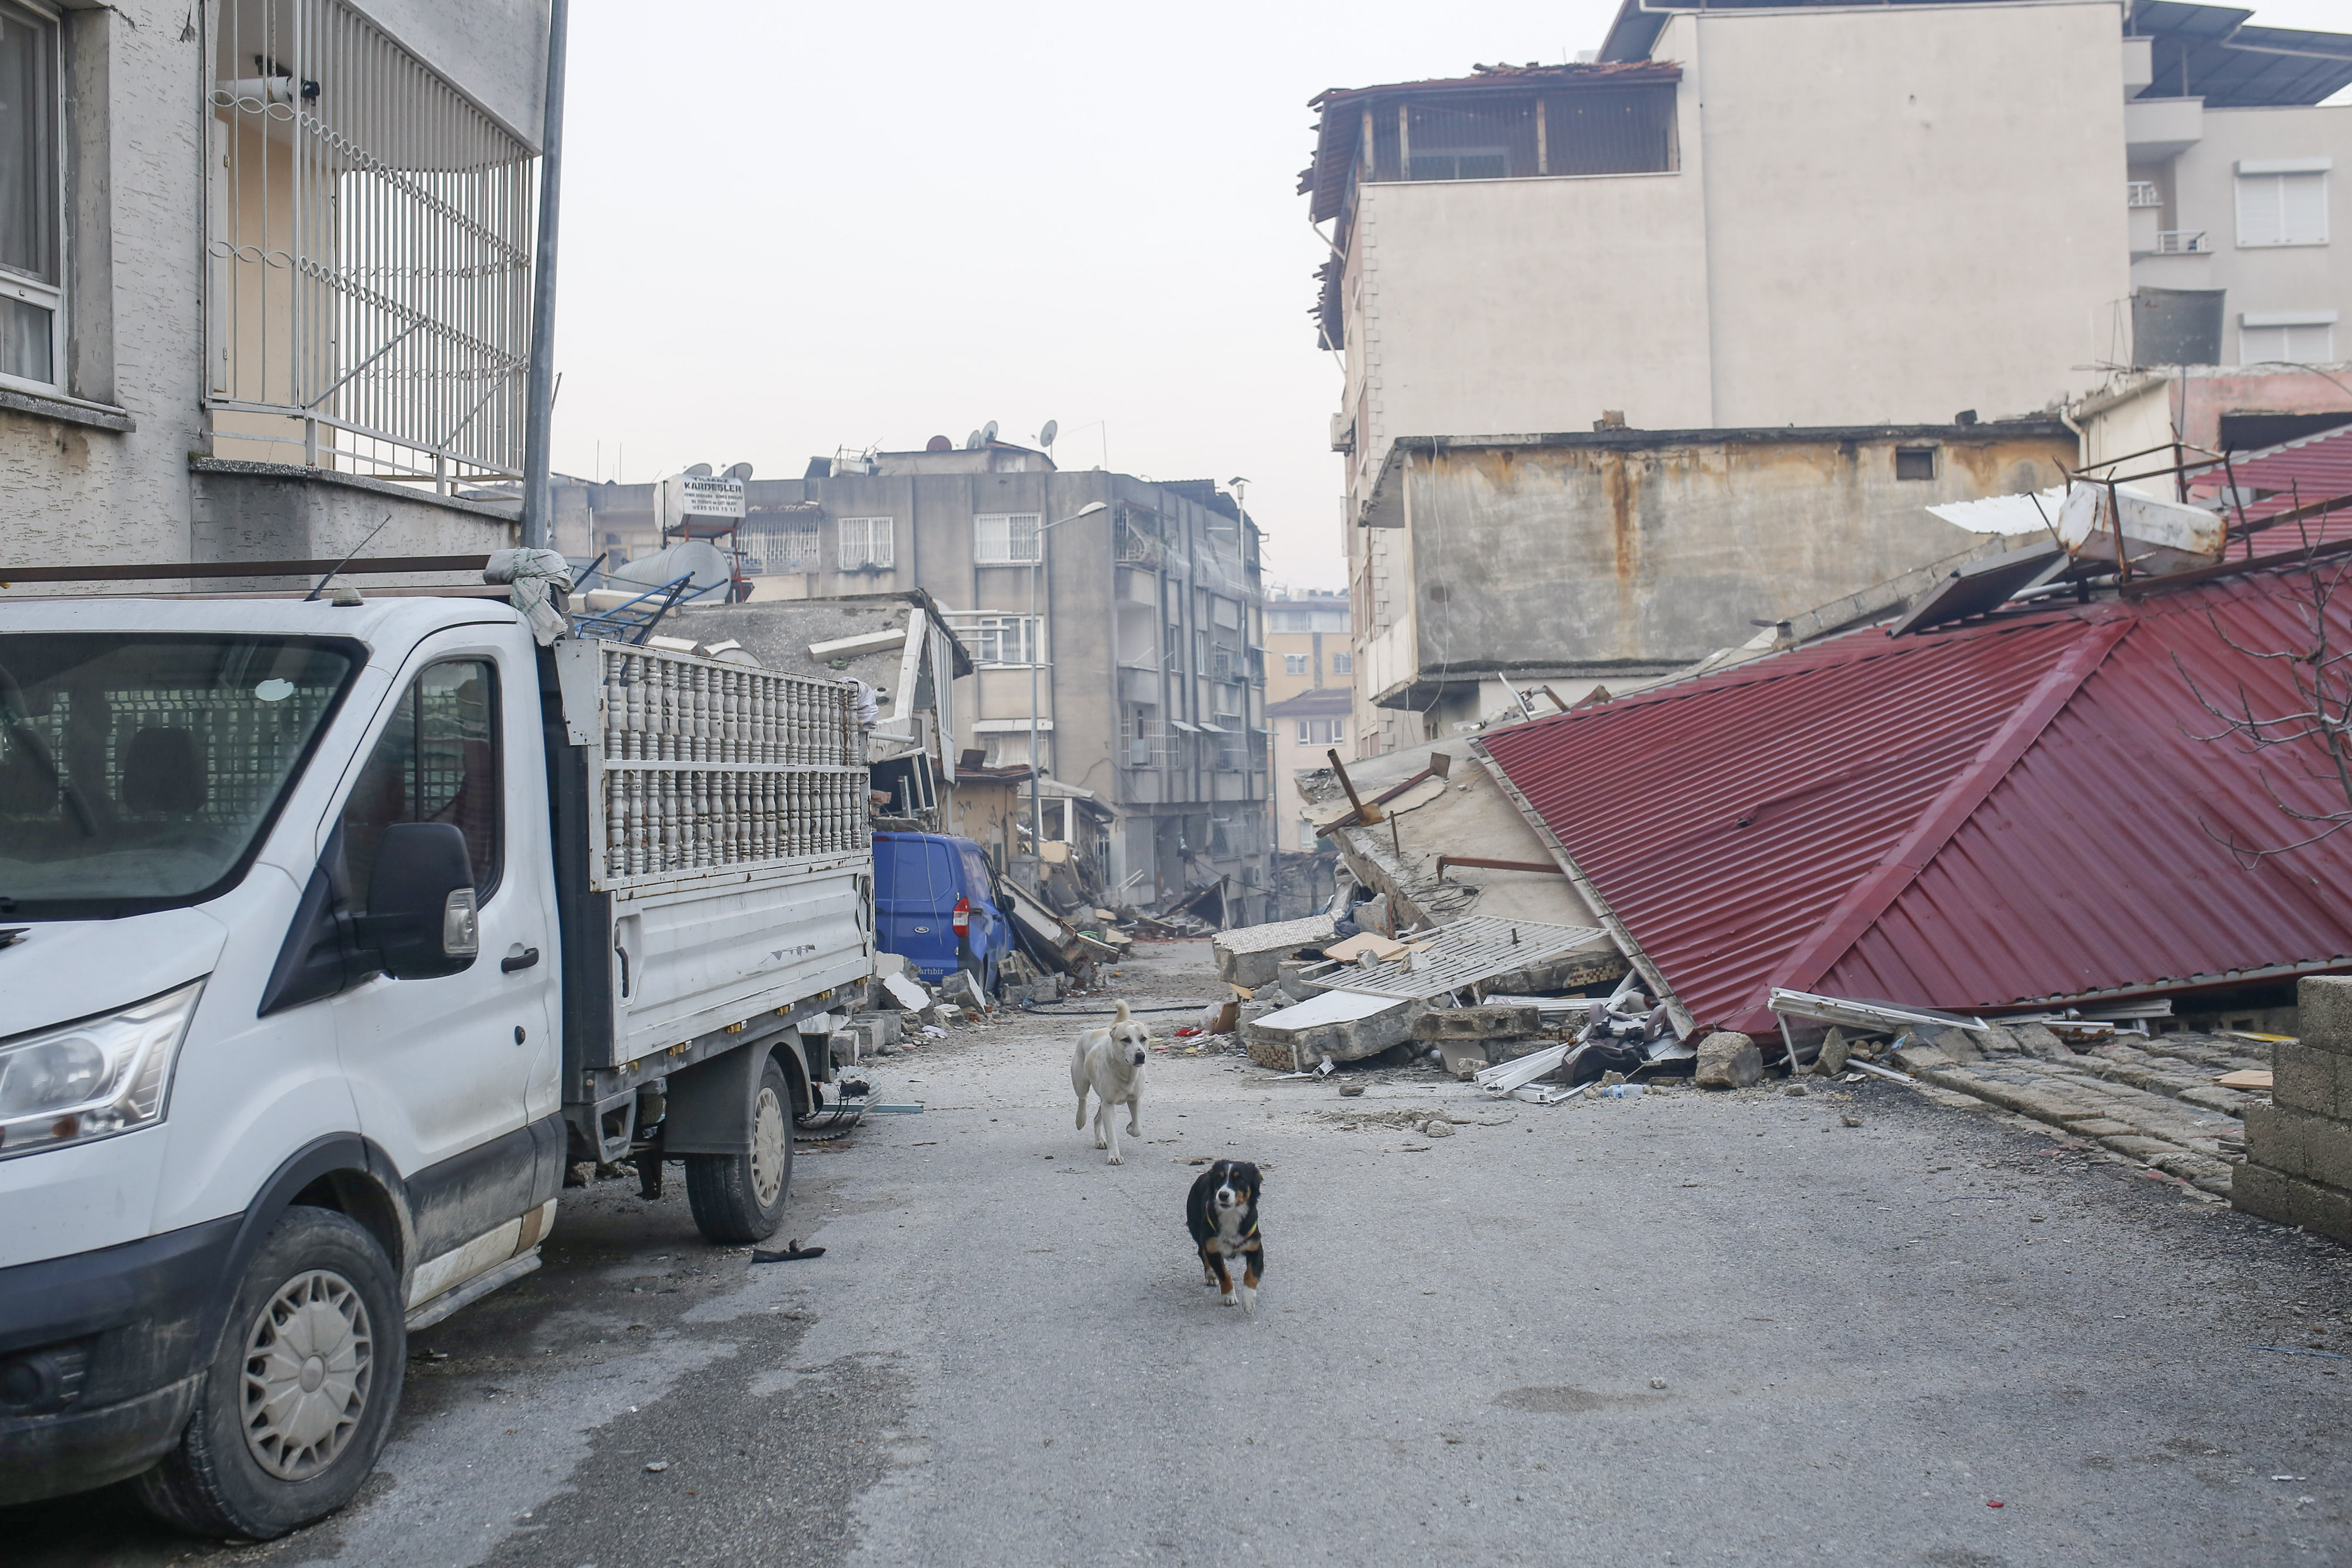 Imagini impresionante cu zeci de animale care au fost scoase de sub dărâmături, în urma cutremurelor devastatoare din Turcia - Imaginea 6